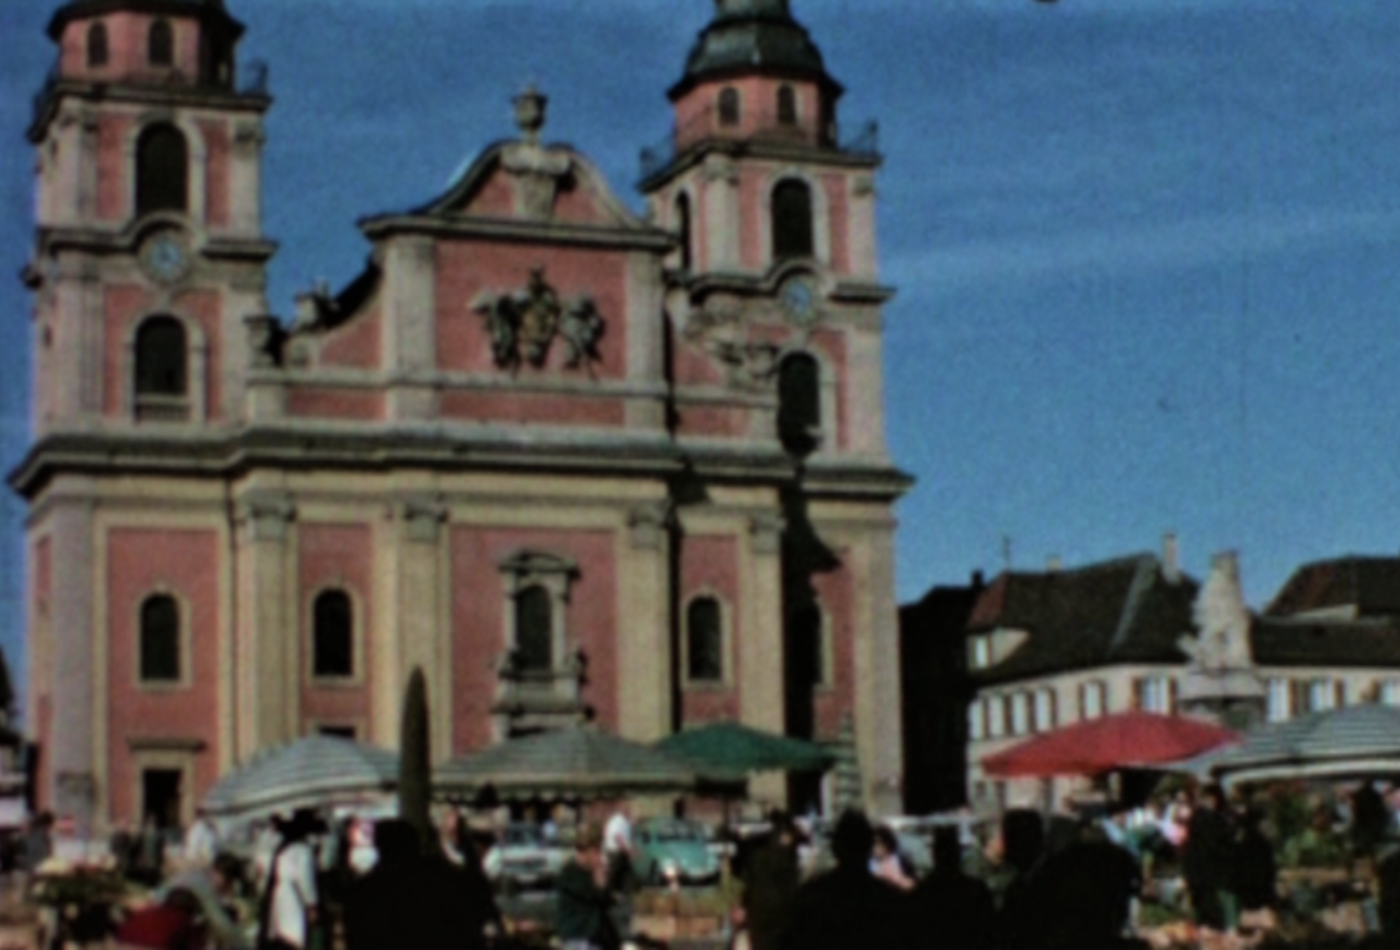 Die histroische Aufnahme zeigt die Evangelische Kirche auf dem Marktplatz in Ludwigsburg.